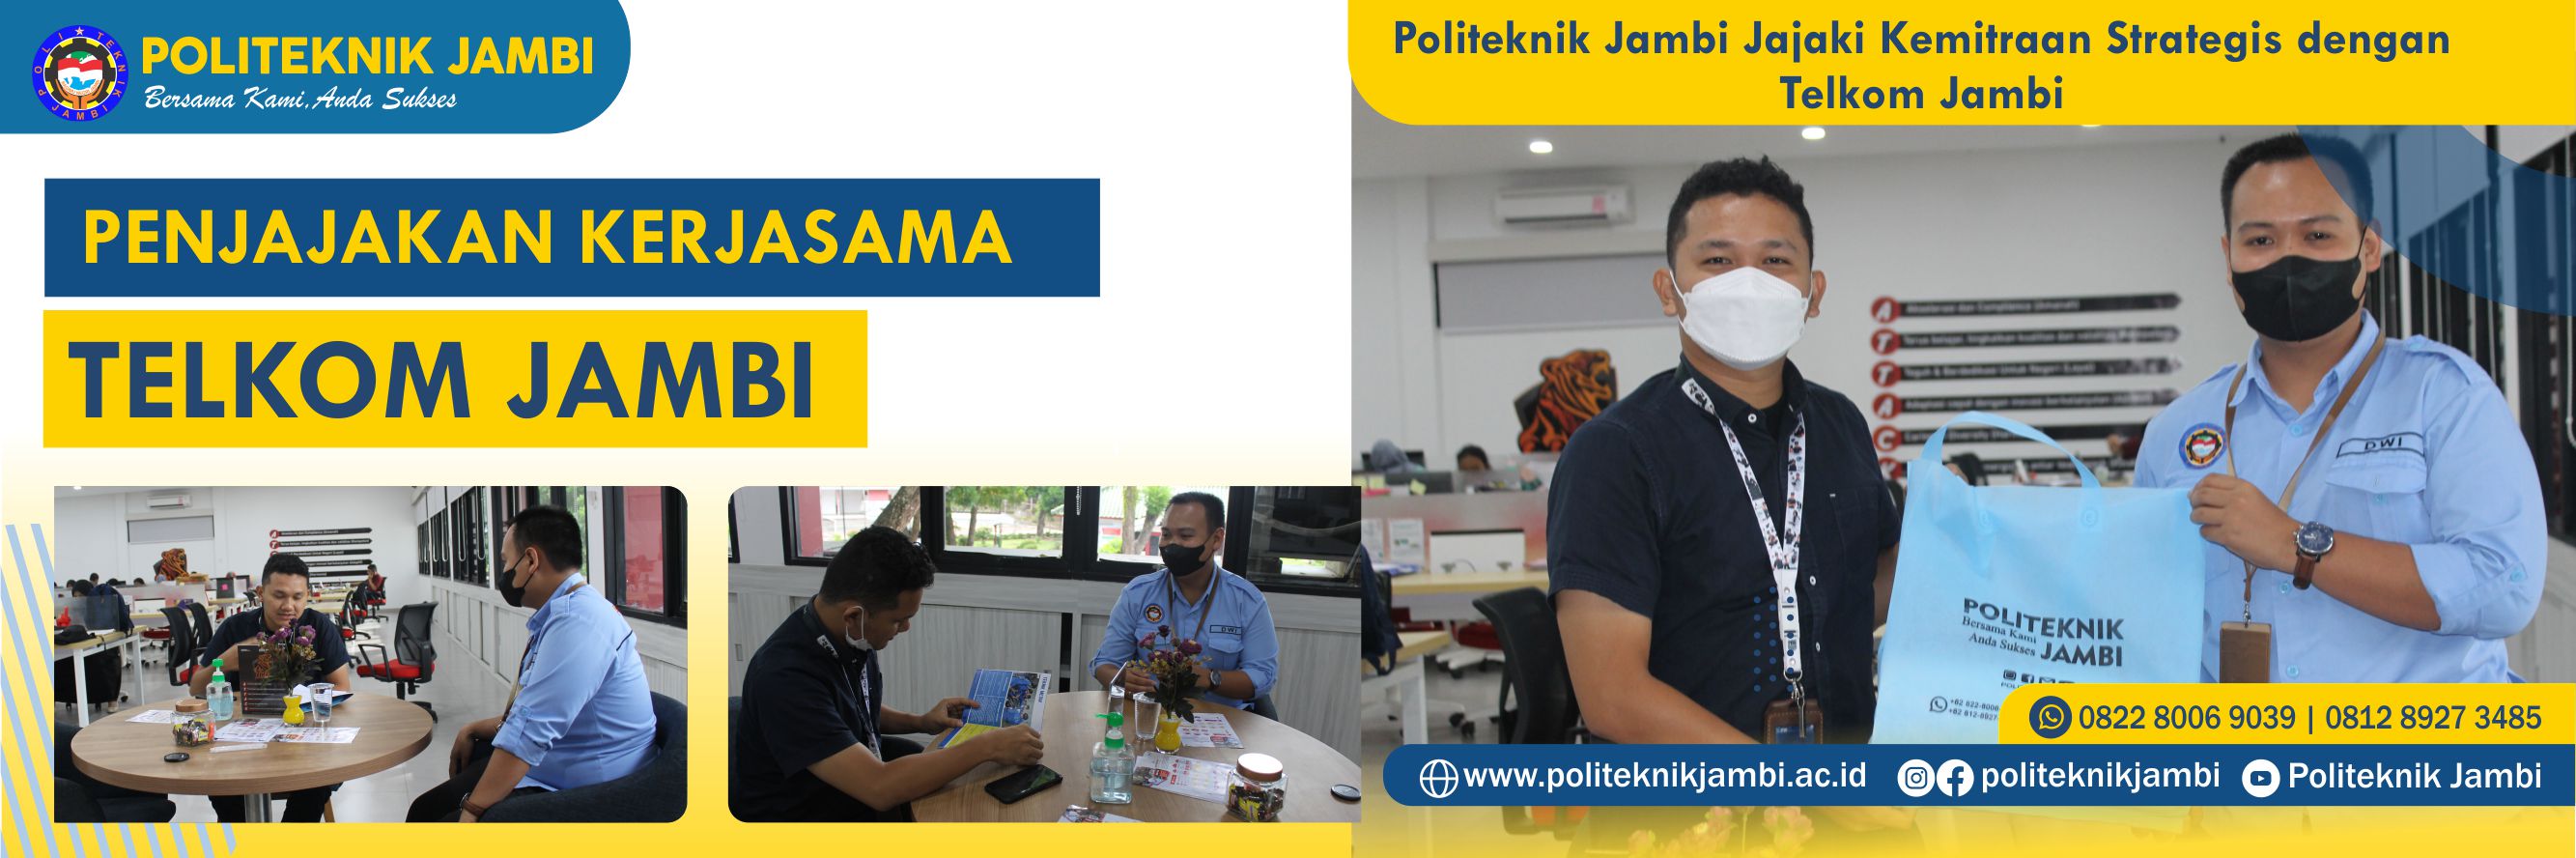 Politeknik Jambi Jajaki Kerjasama Dengan Telkom Jambi